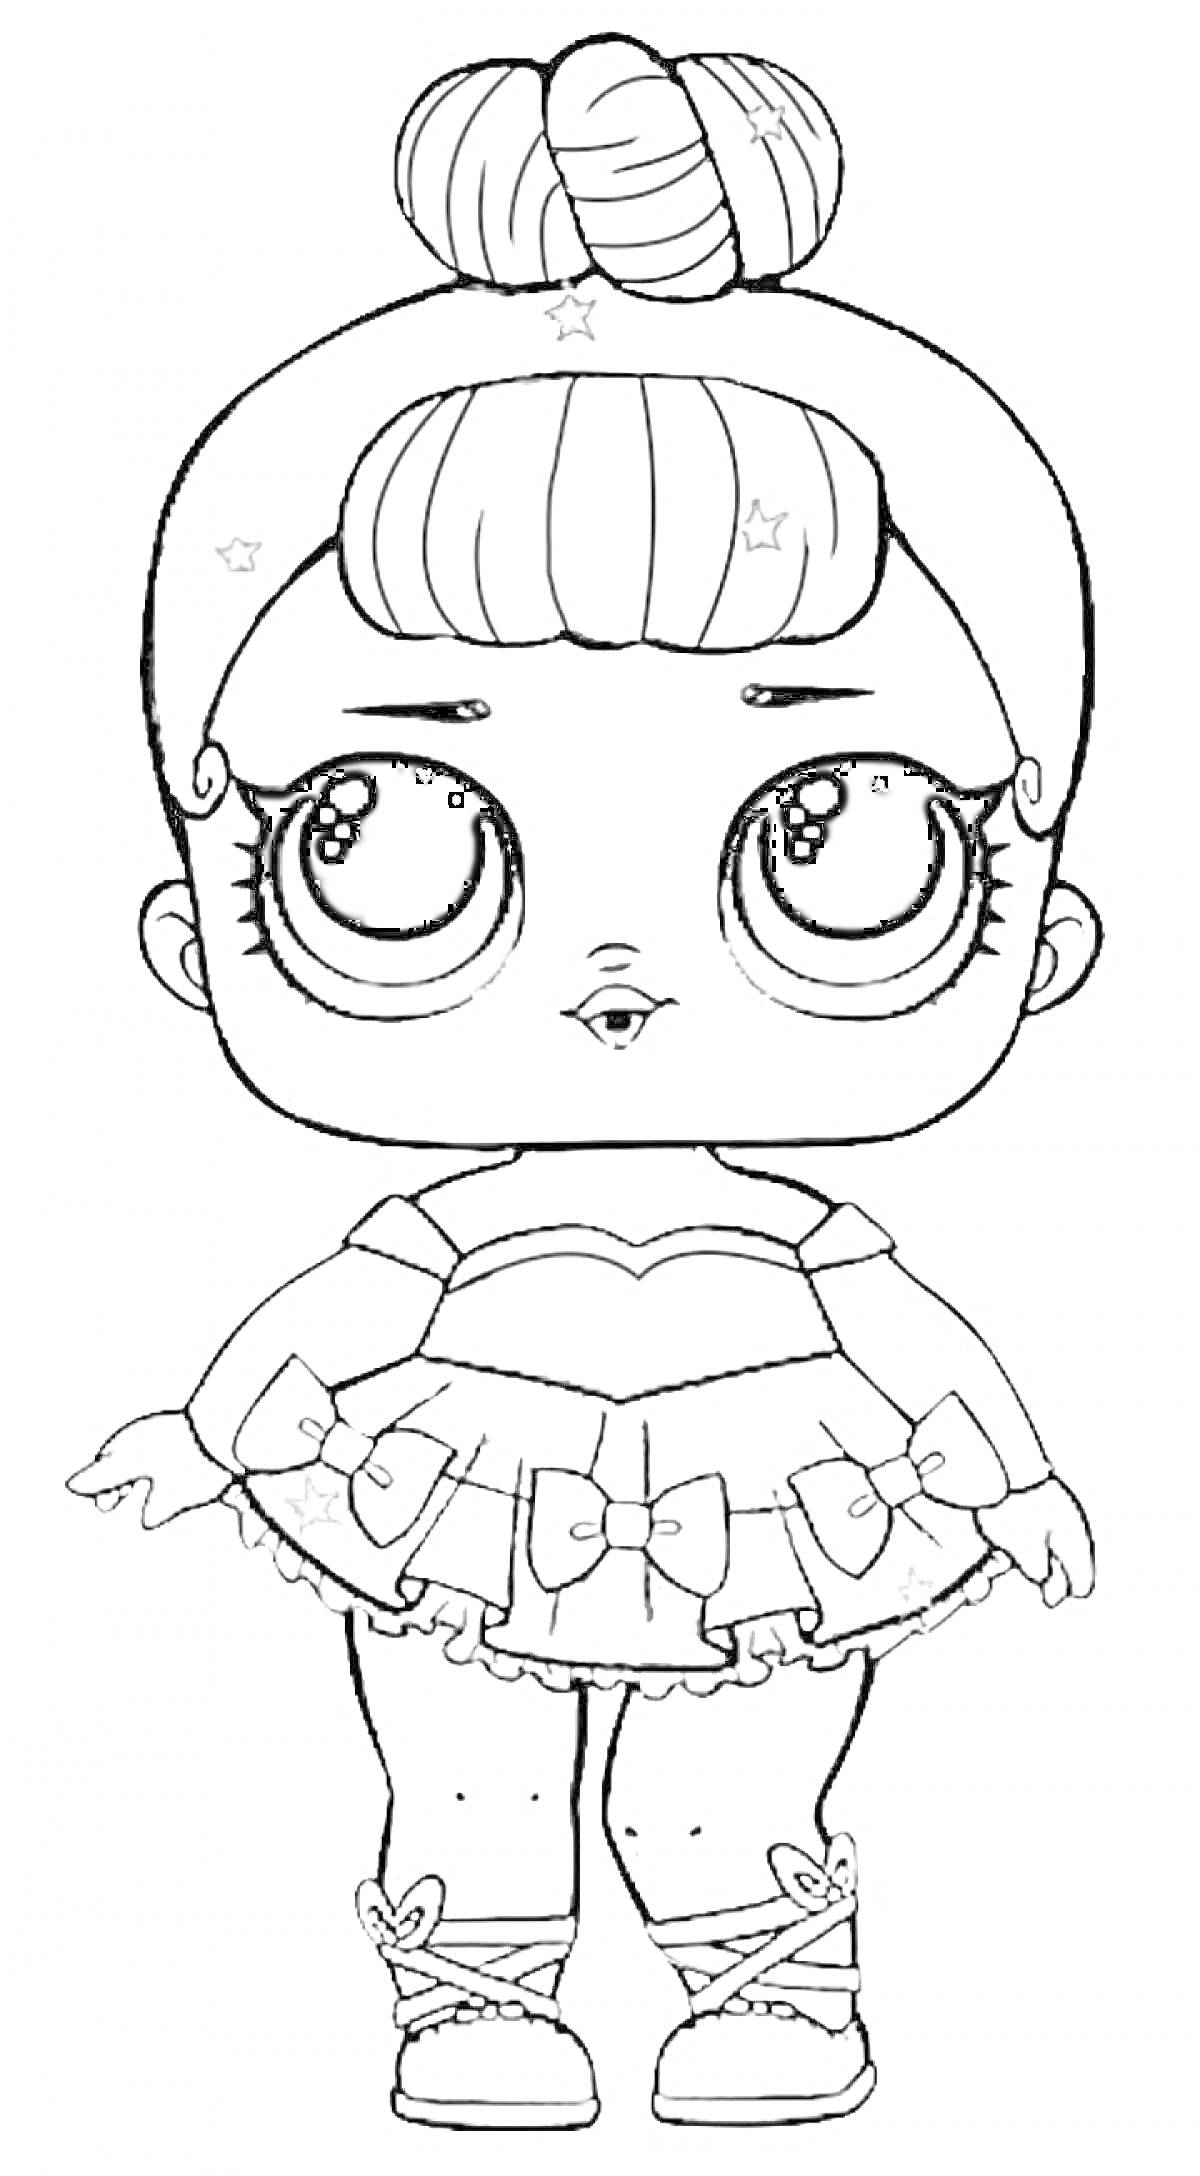 Раскраска Кукла Лол с пучком на голове, бантики на юбке, звезды в волосах.